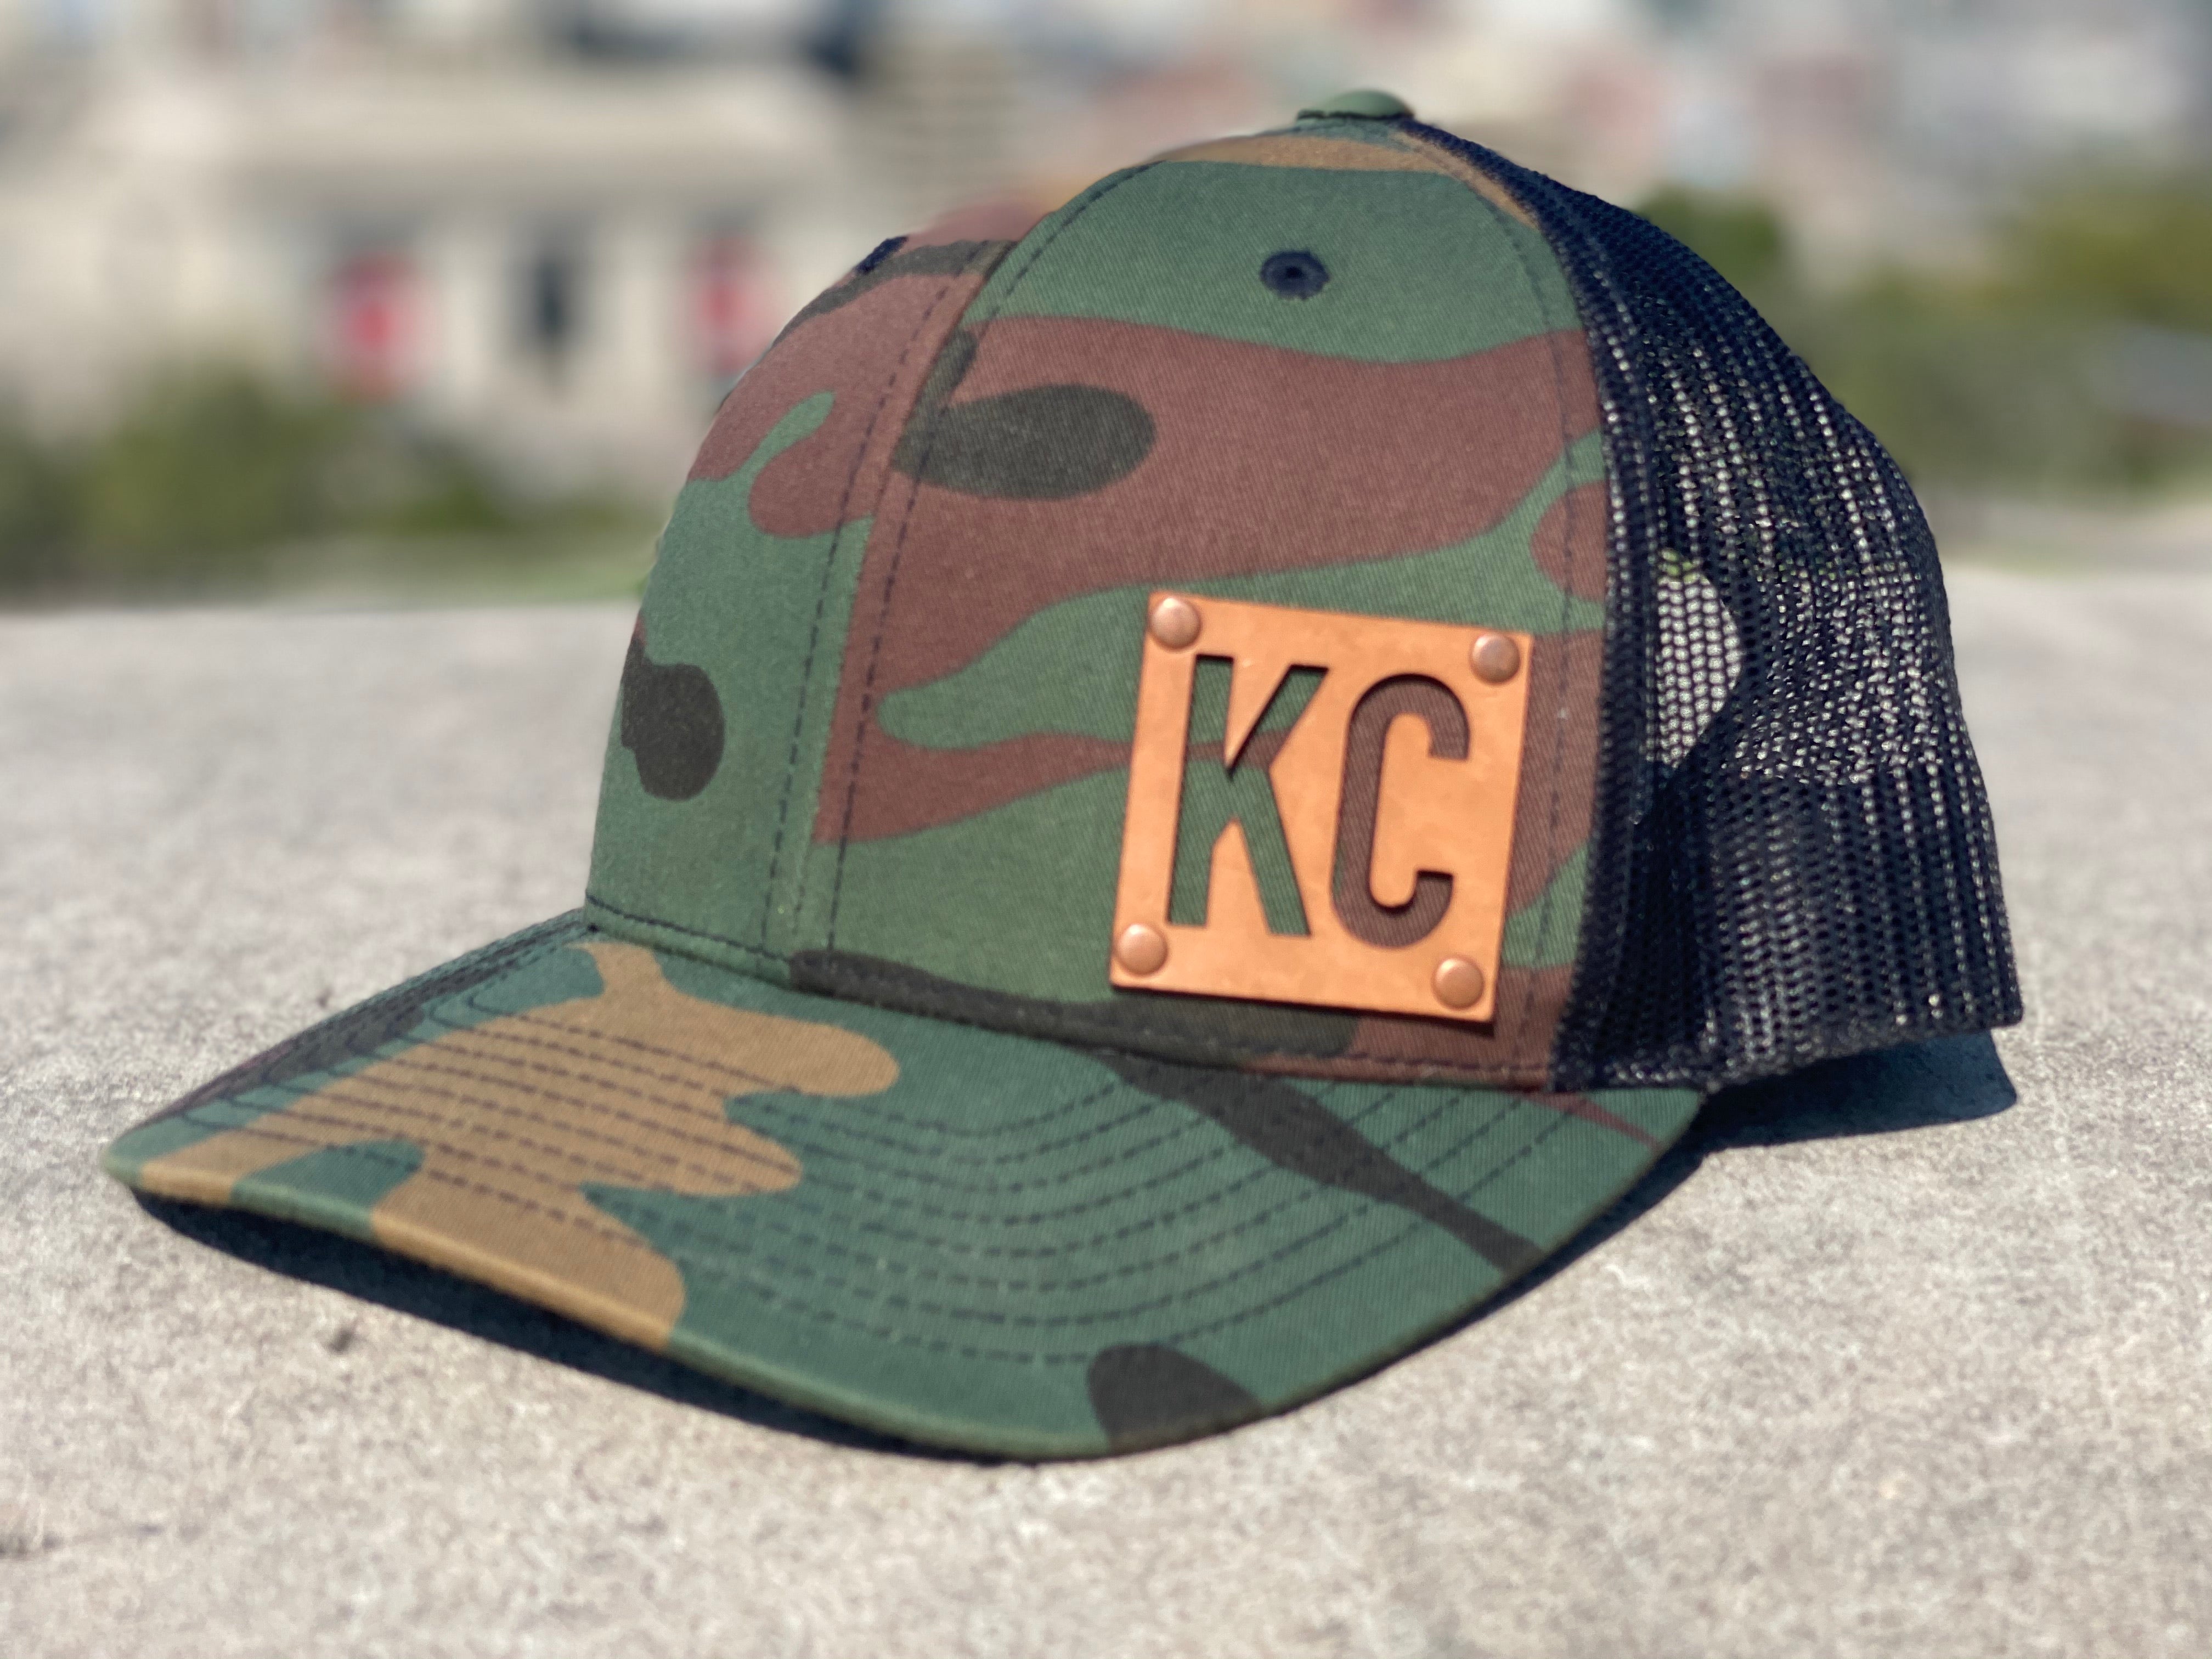 The Camo KC Hat